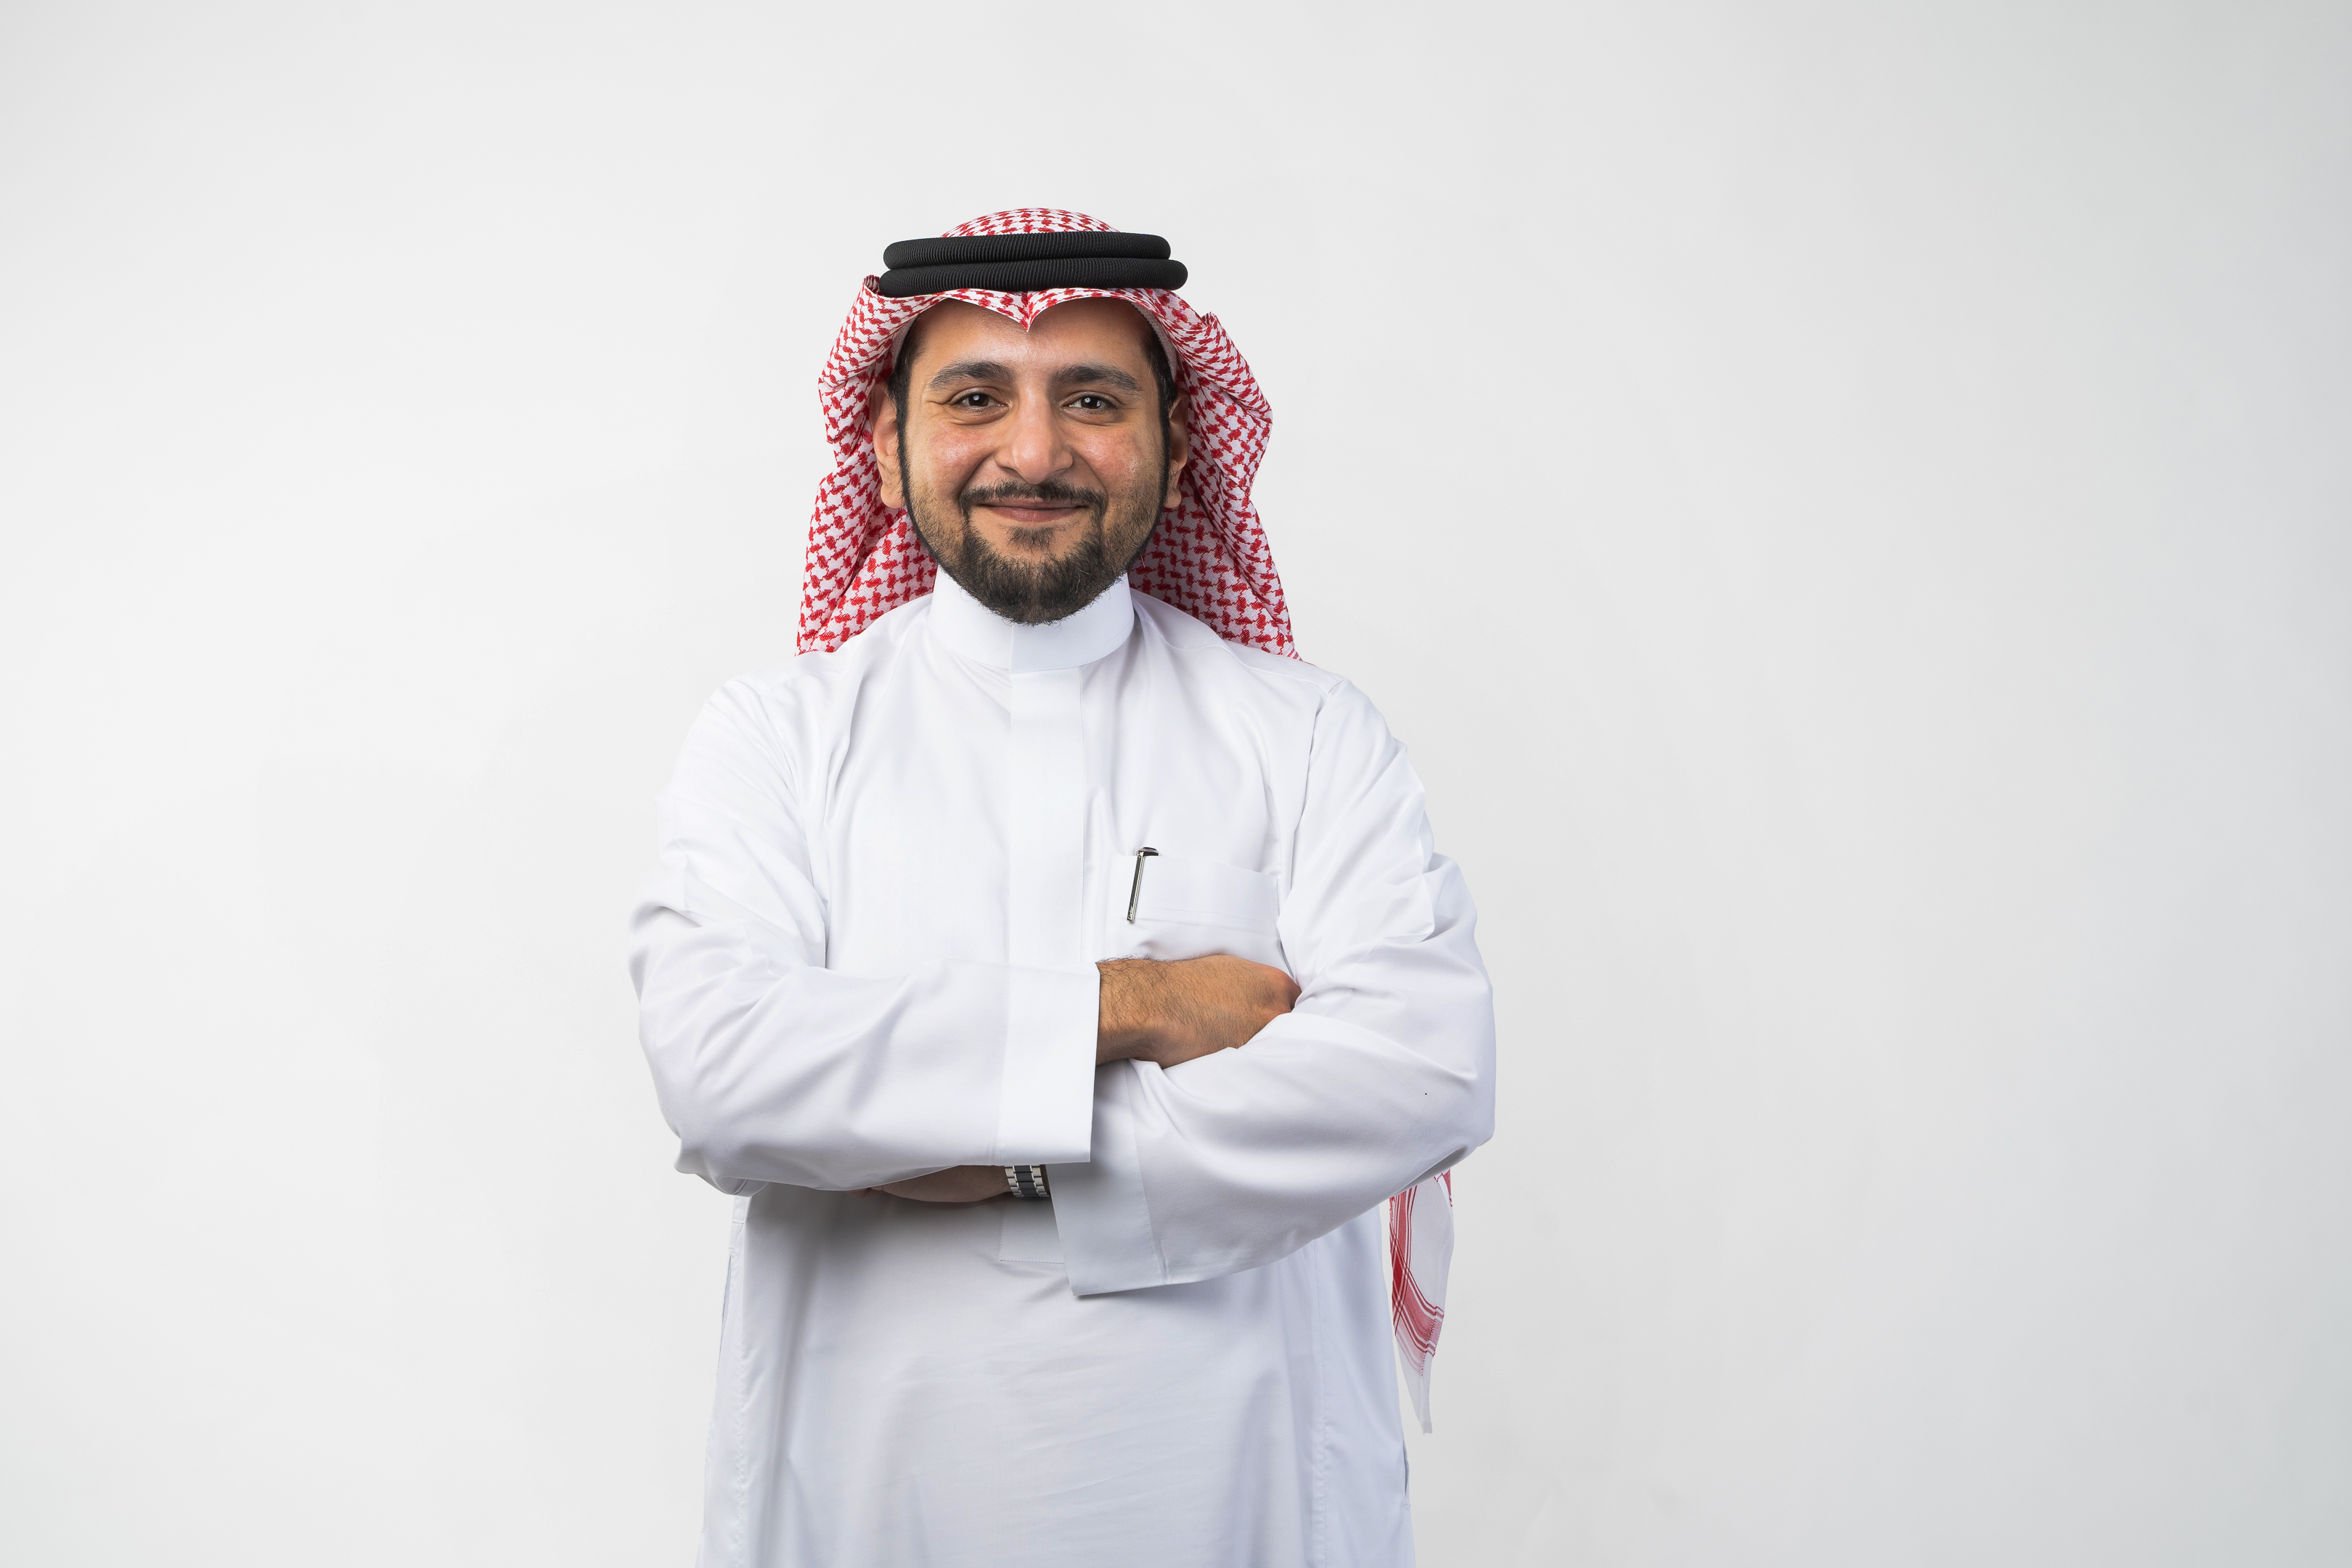 Mr. Abdulaziz Abdul-Mohsen Al-Jabr